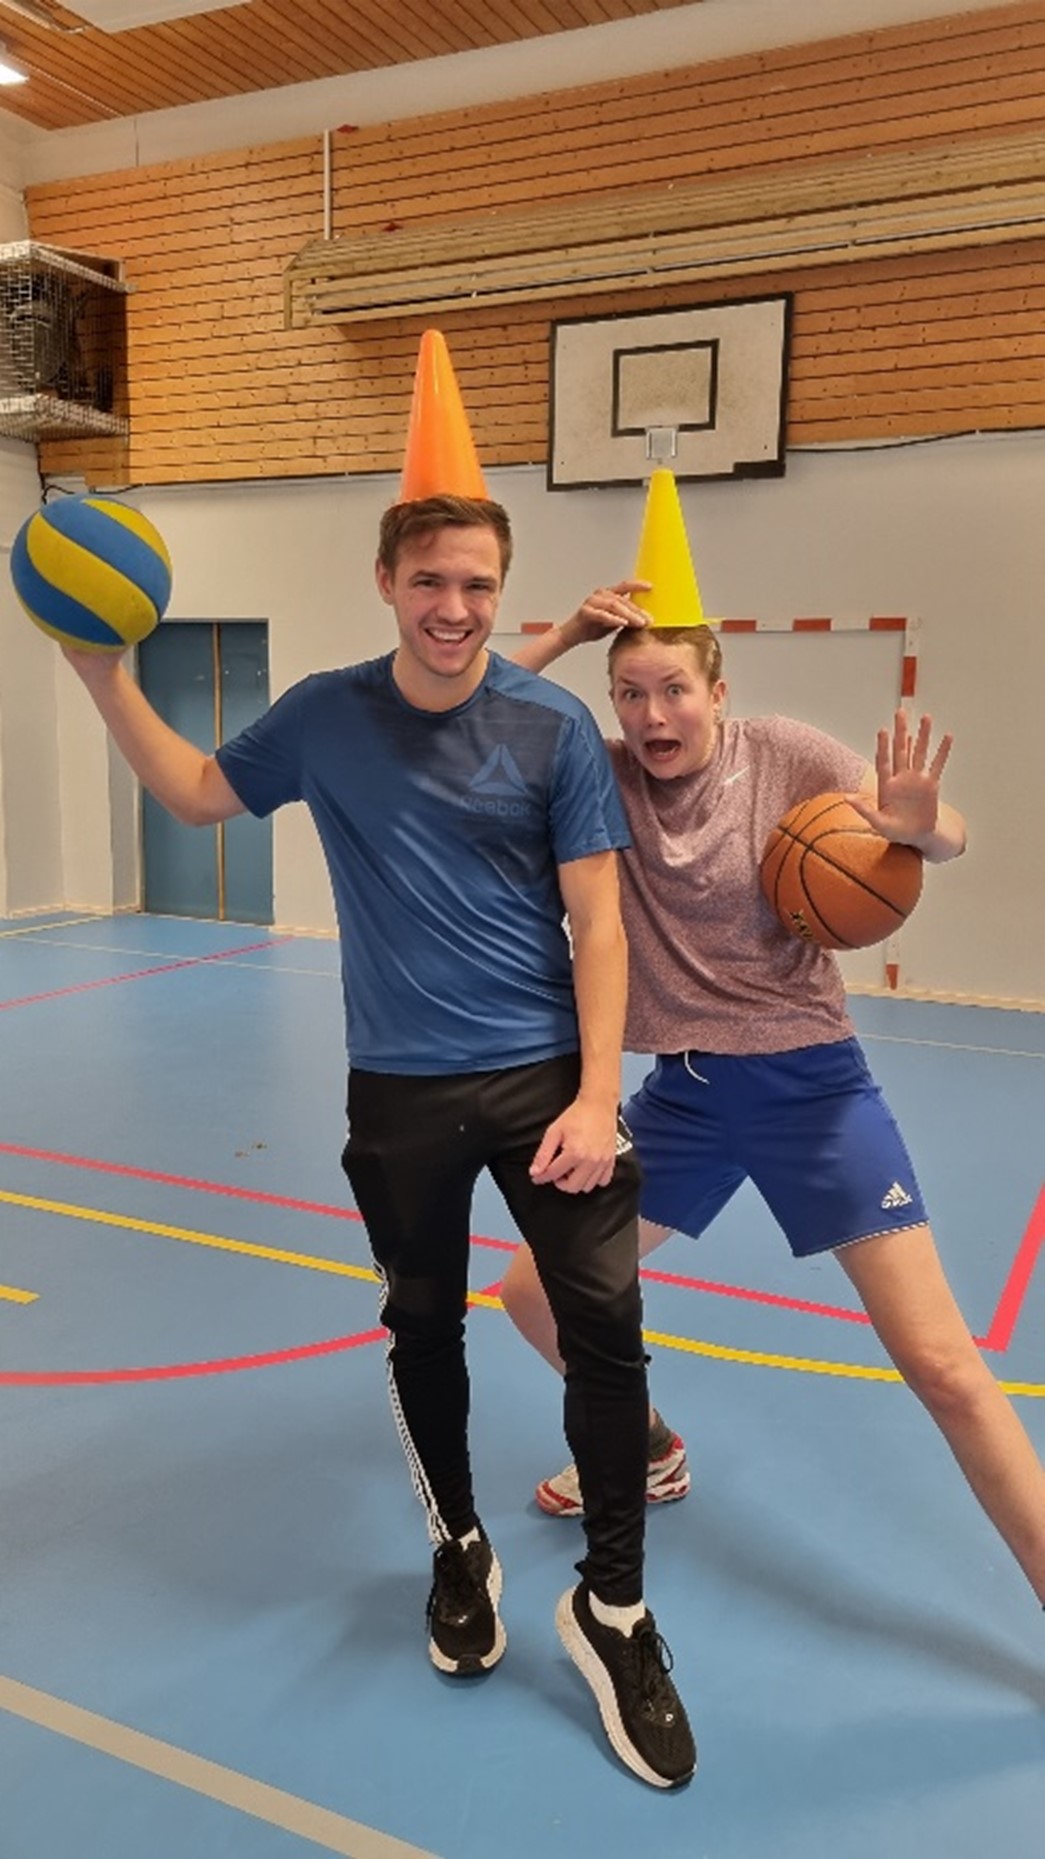 To gutter poserer i gymsal med ball